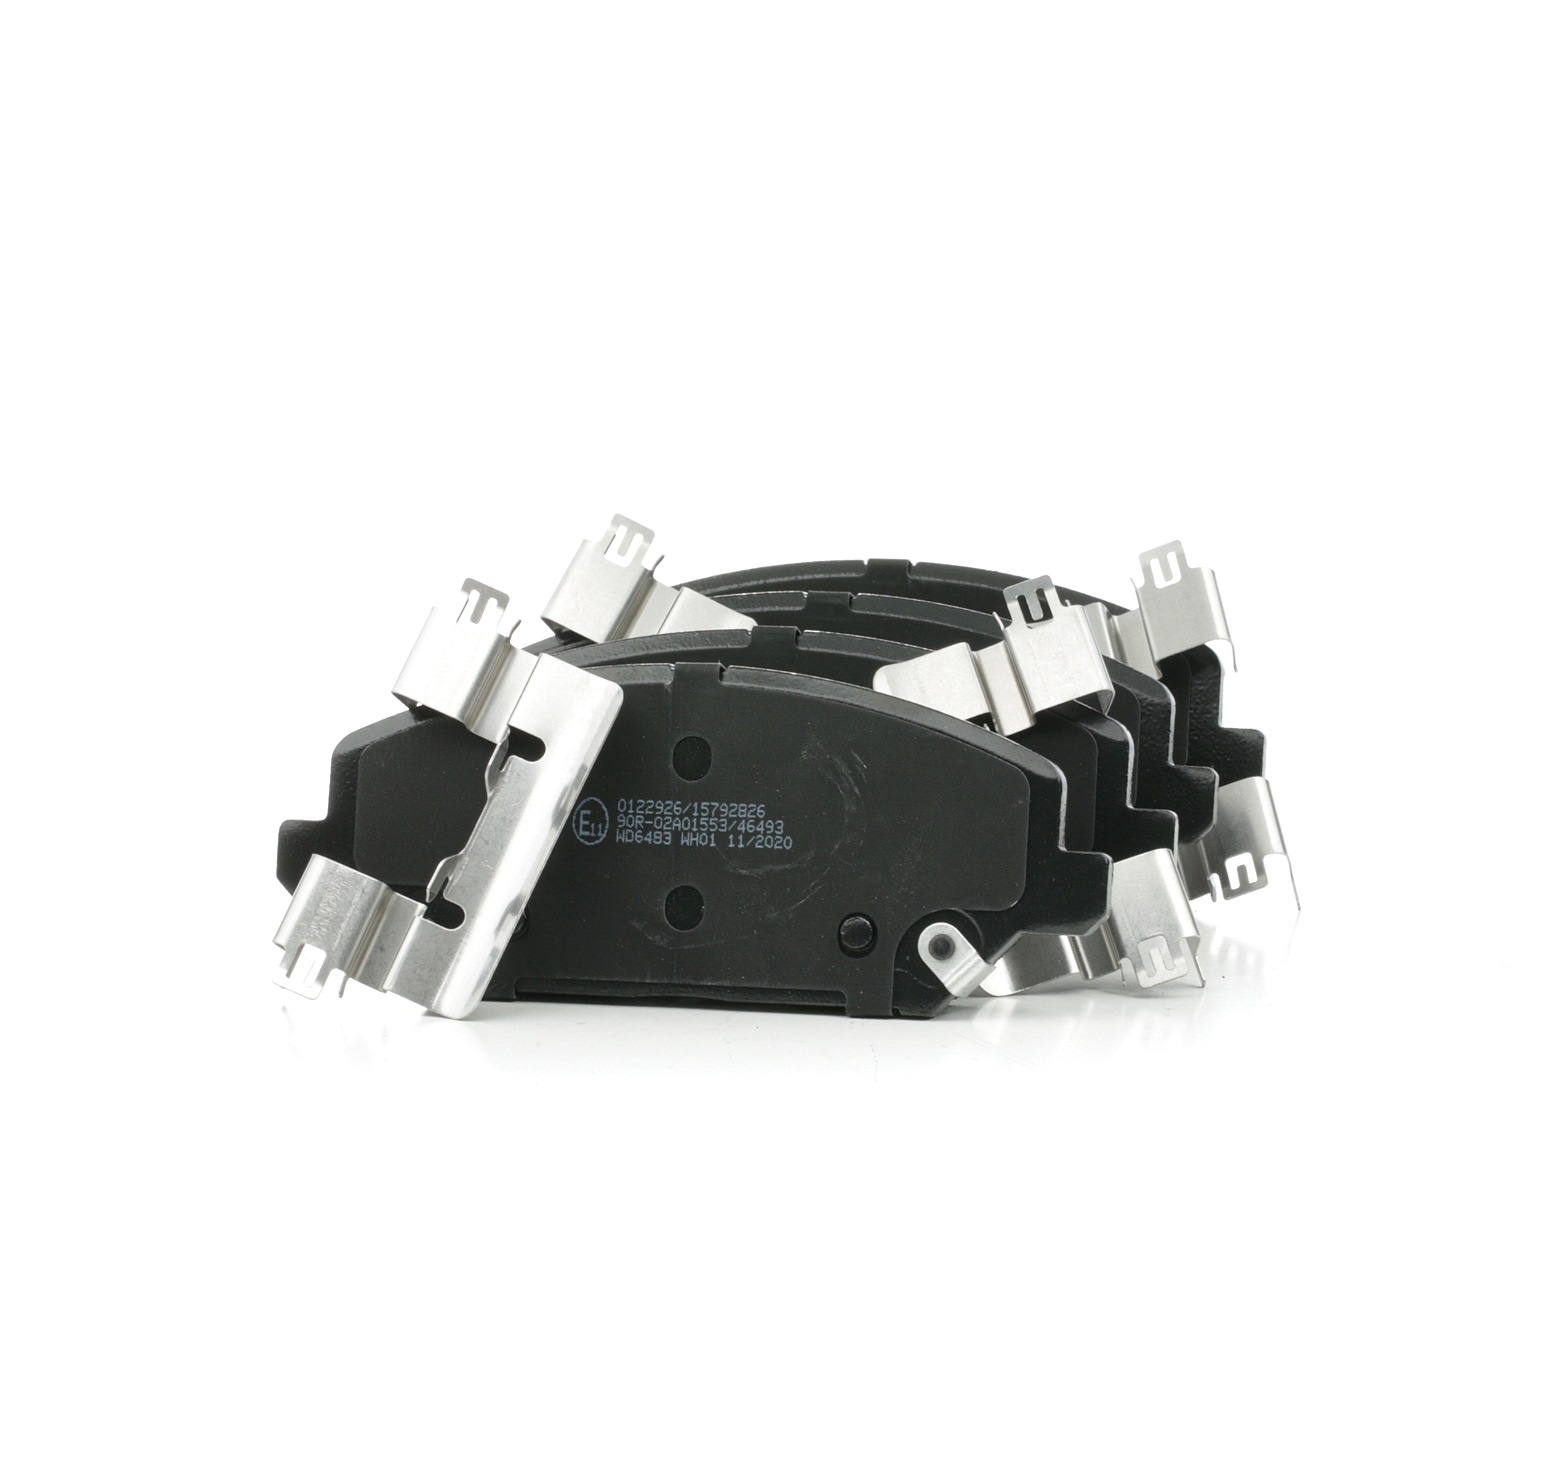 STARK Bremsbelagsatz SKBP-0012033 Vorderachse, mit akustischer Verschleißwarnung, mit Anti-Quietsch-Blech Höhe 1: 59,7mm, Breite 1: 148,8mm, Dicke/Stärke 1: 19,8mm